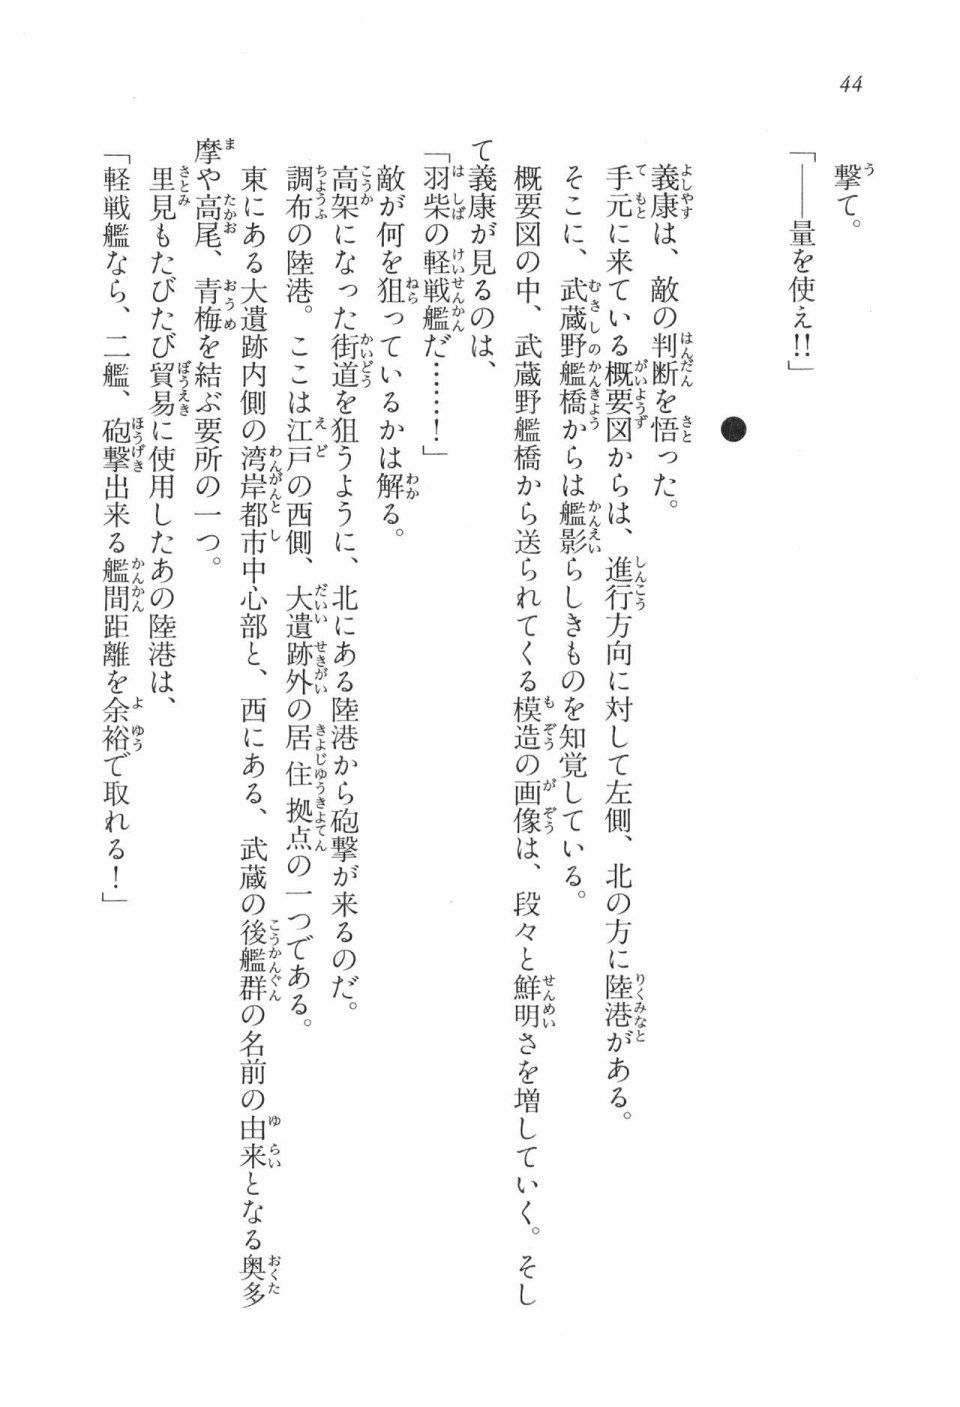 Kyoukai Senjou no Horizon LN Vol 17(7B) - Photo #44